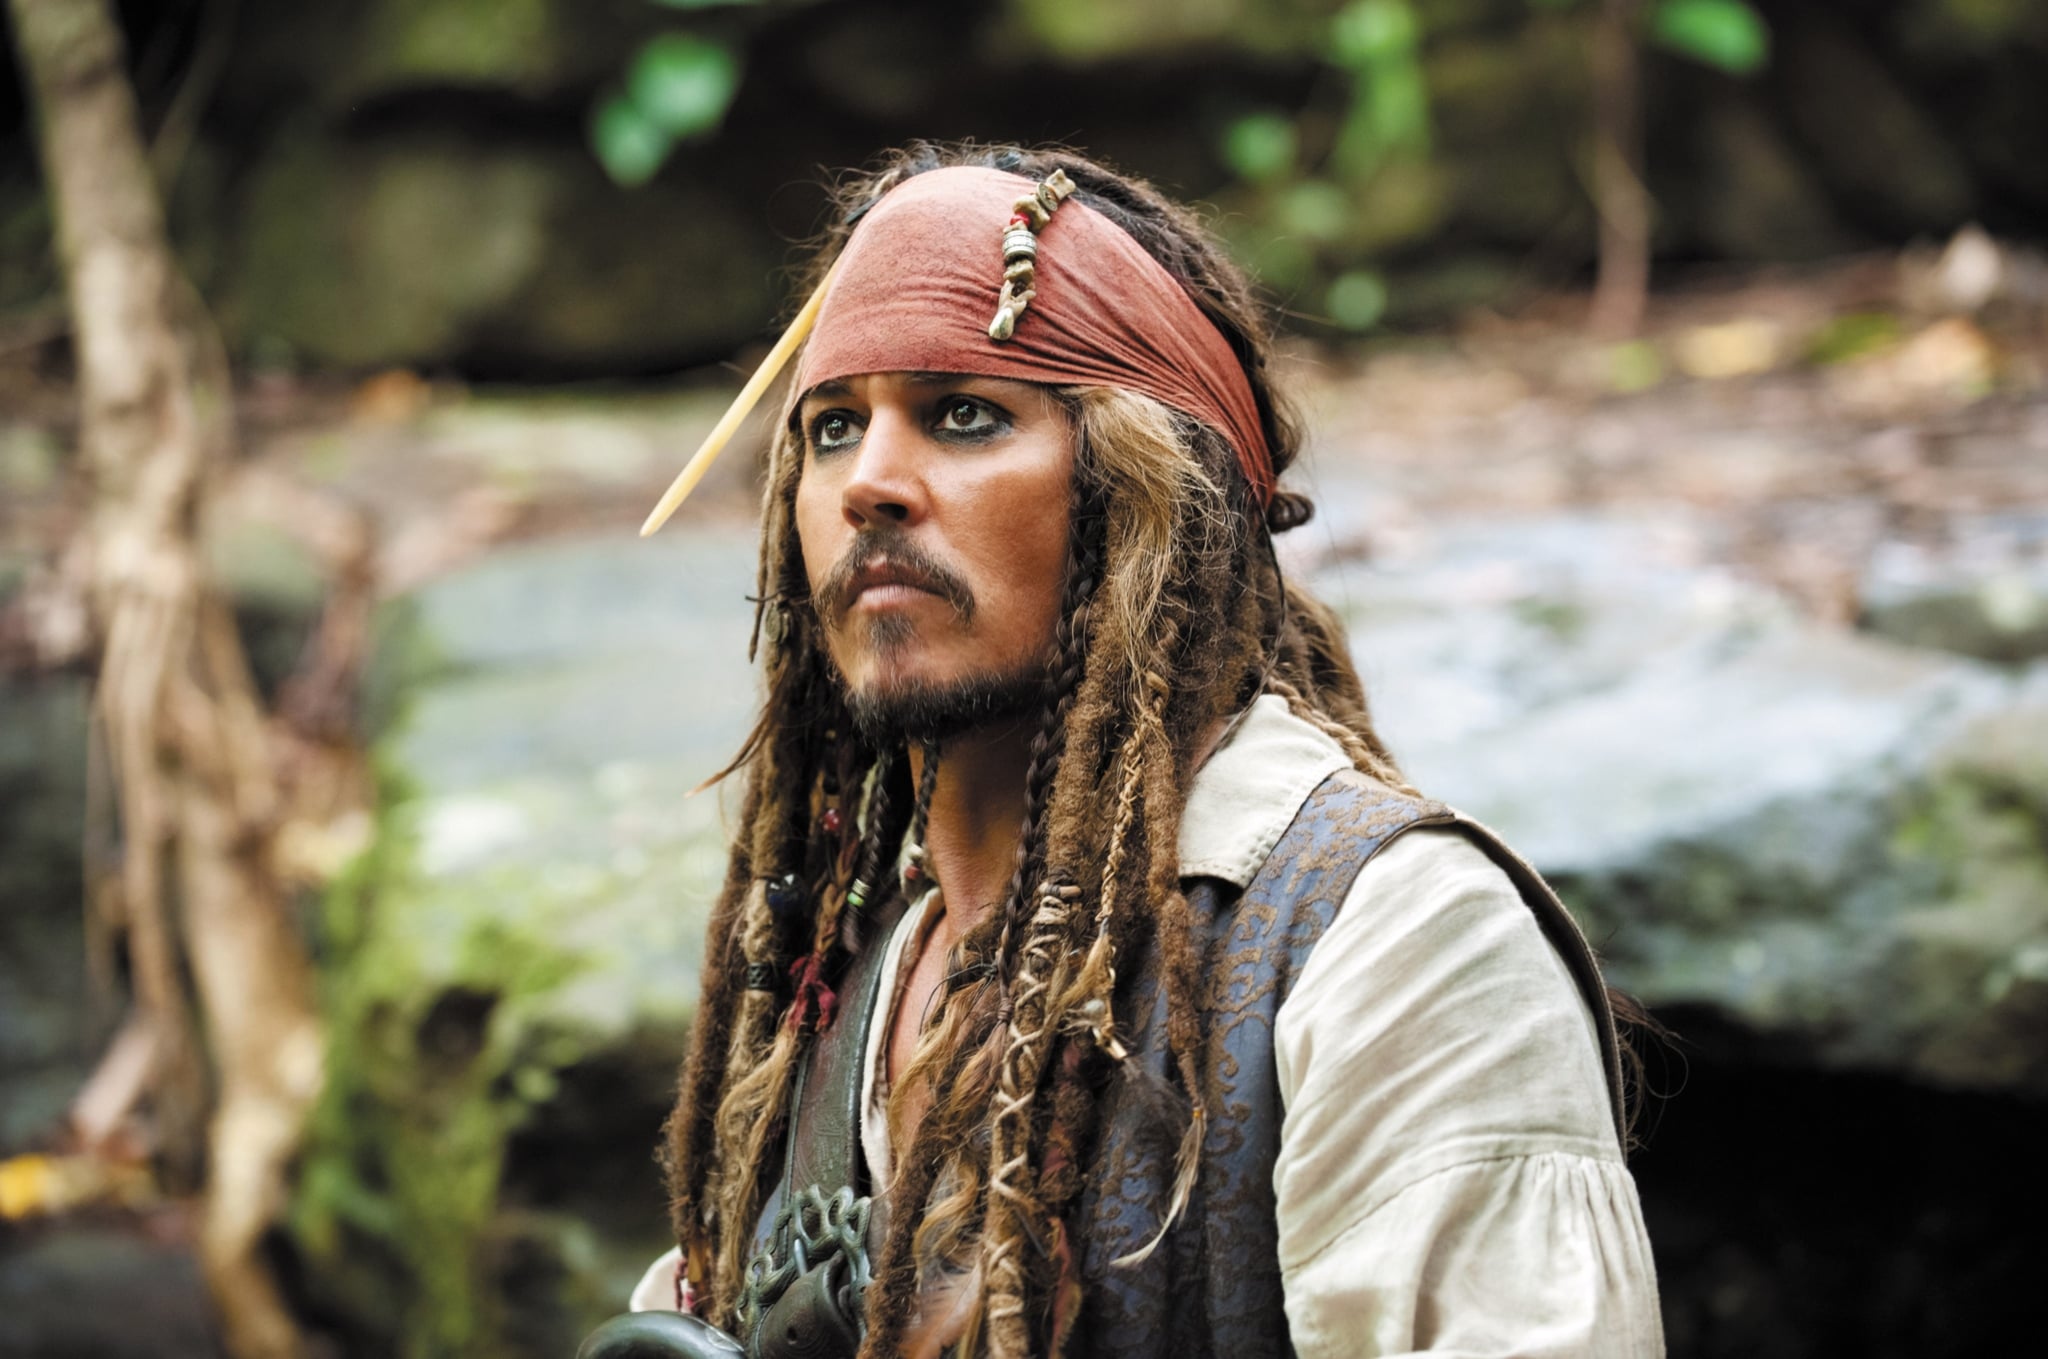 Jack Sparrow - actor